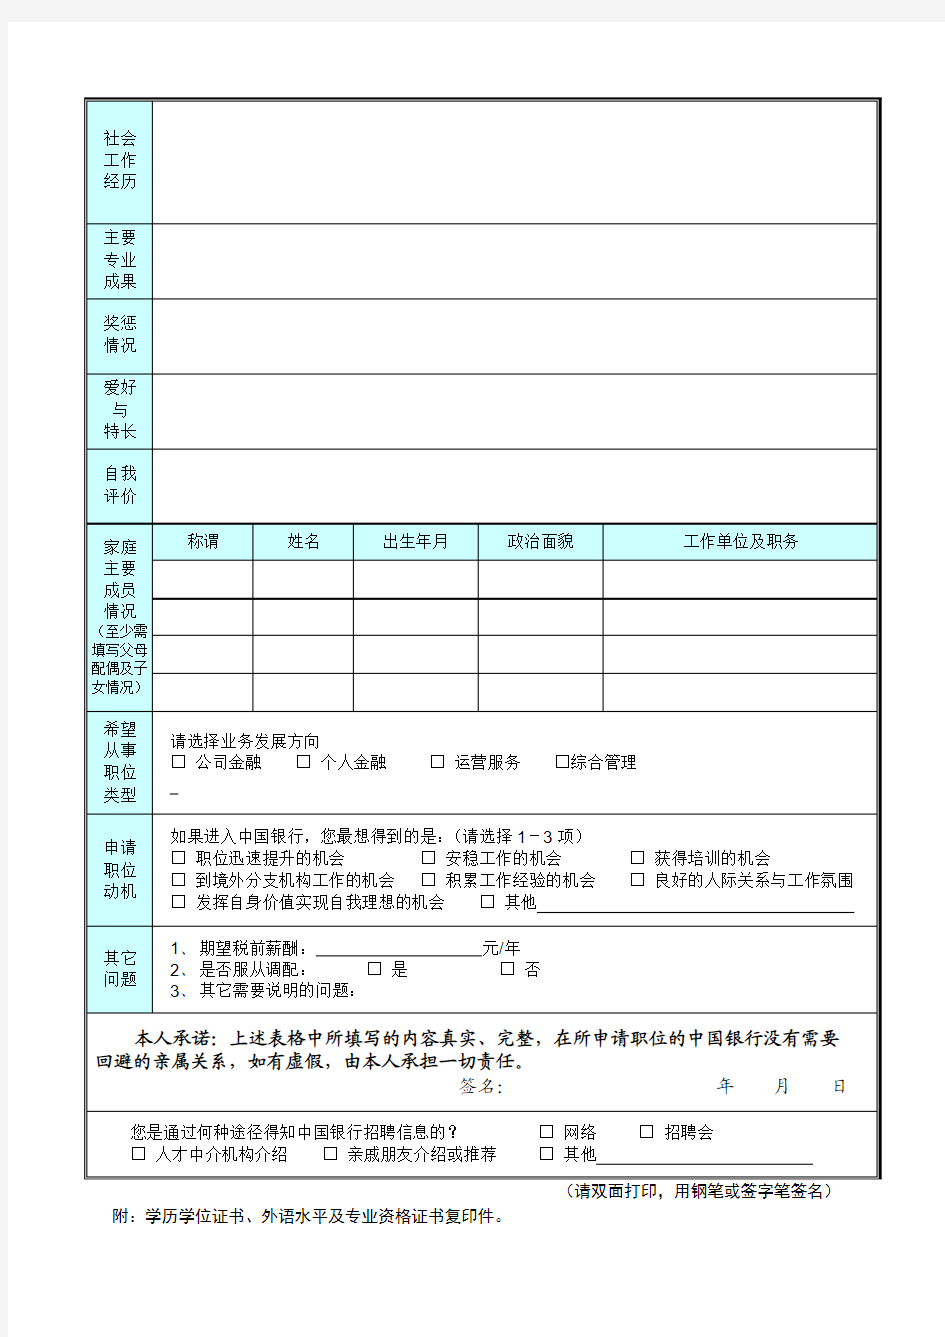 中国银行职位申请表